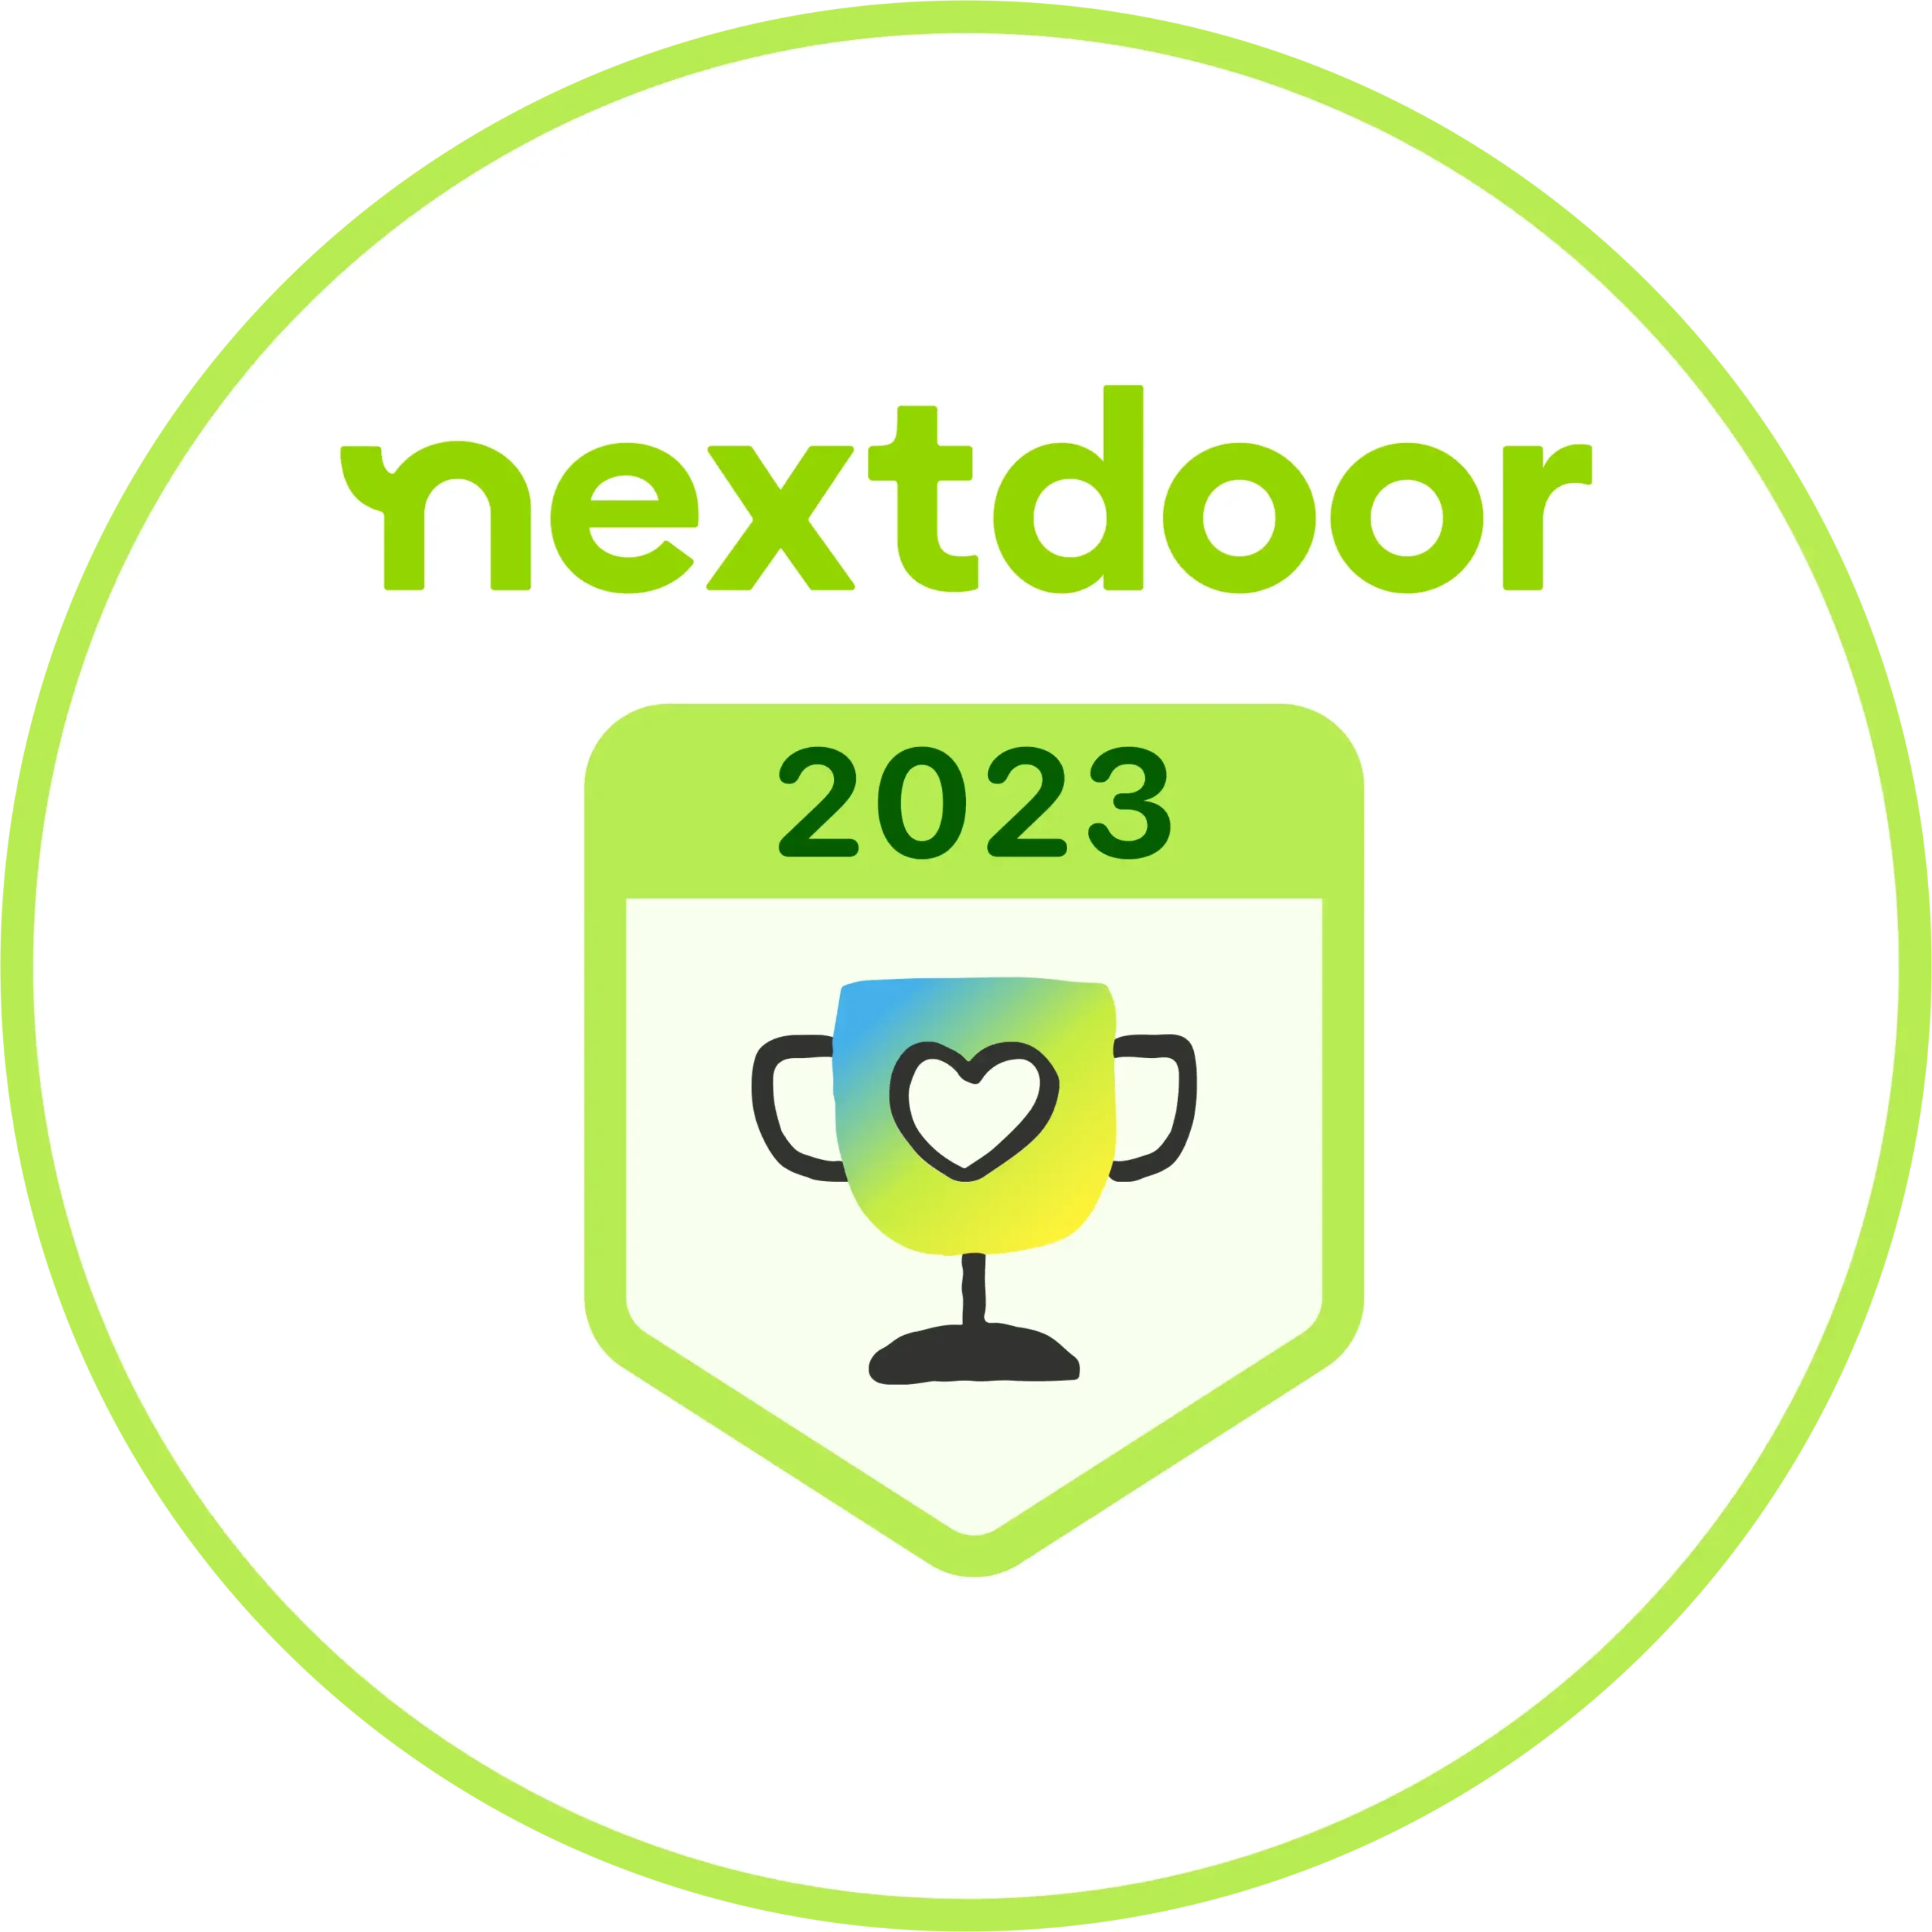 Nextdoor 2023